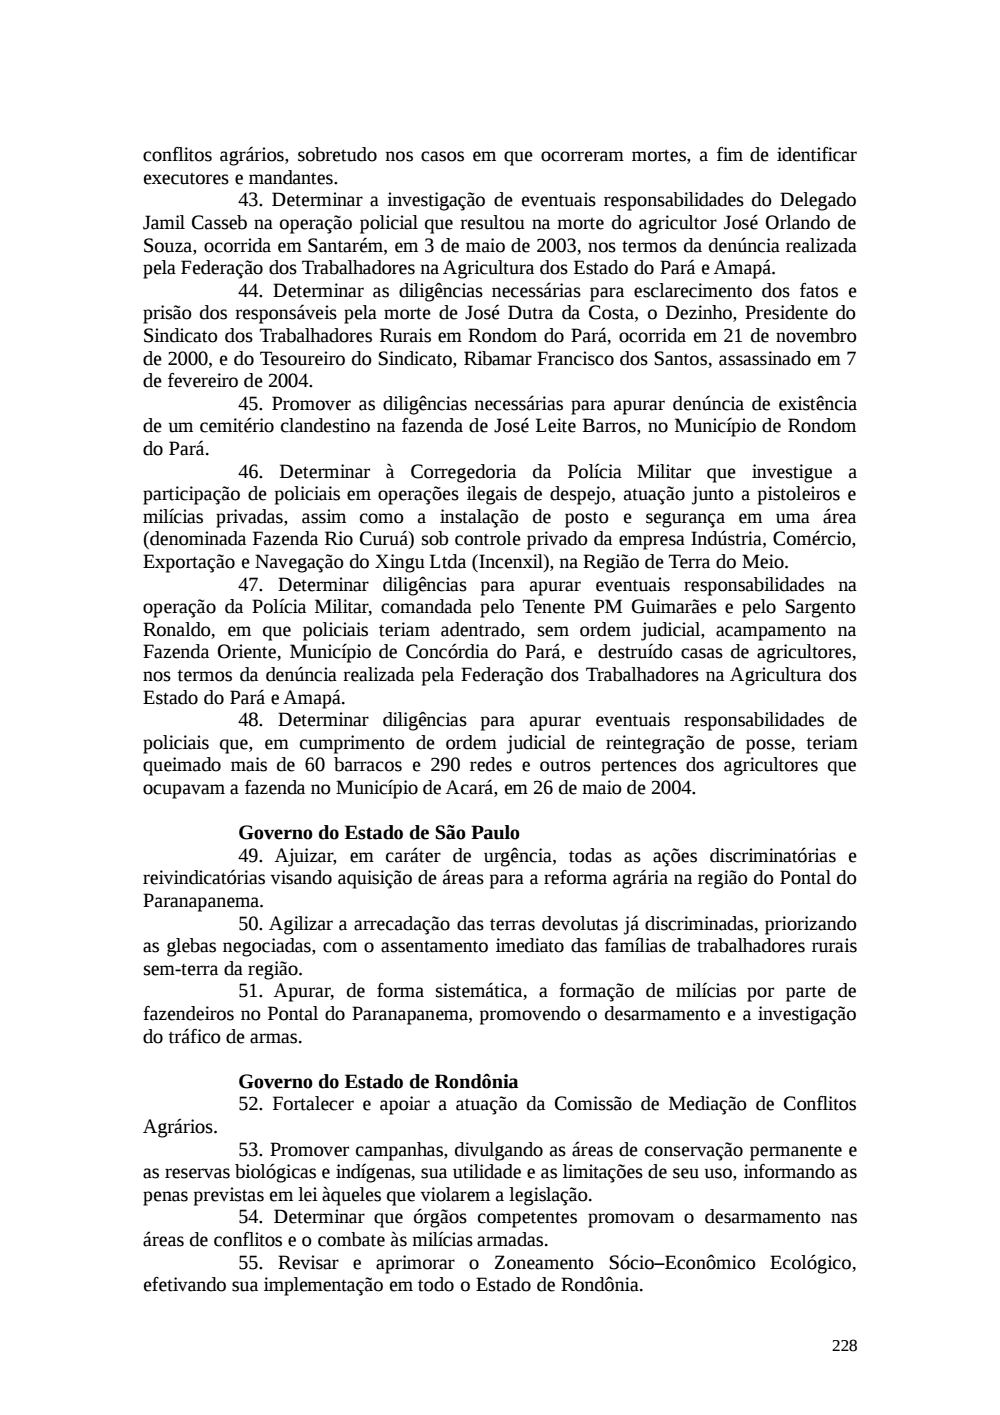 Page 228 from Relatório final da comissão